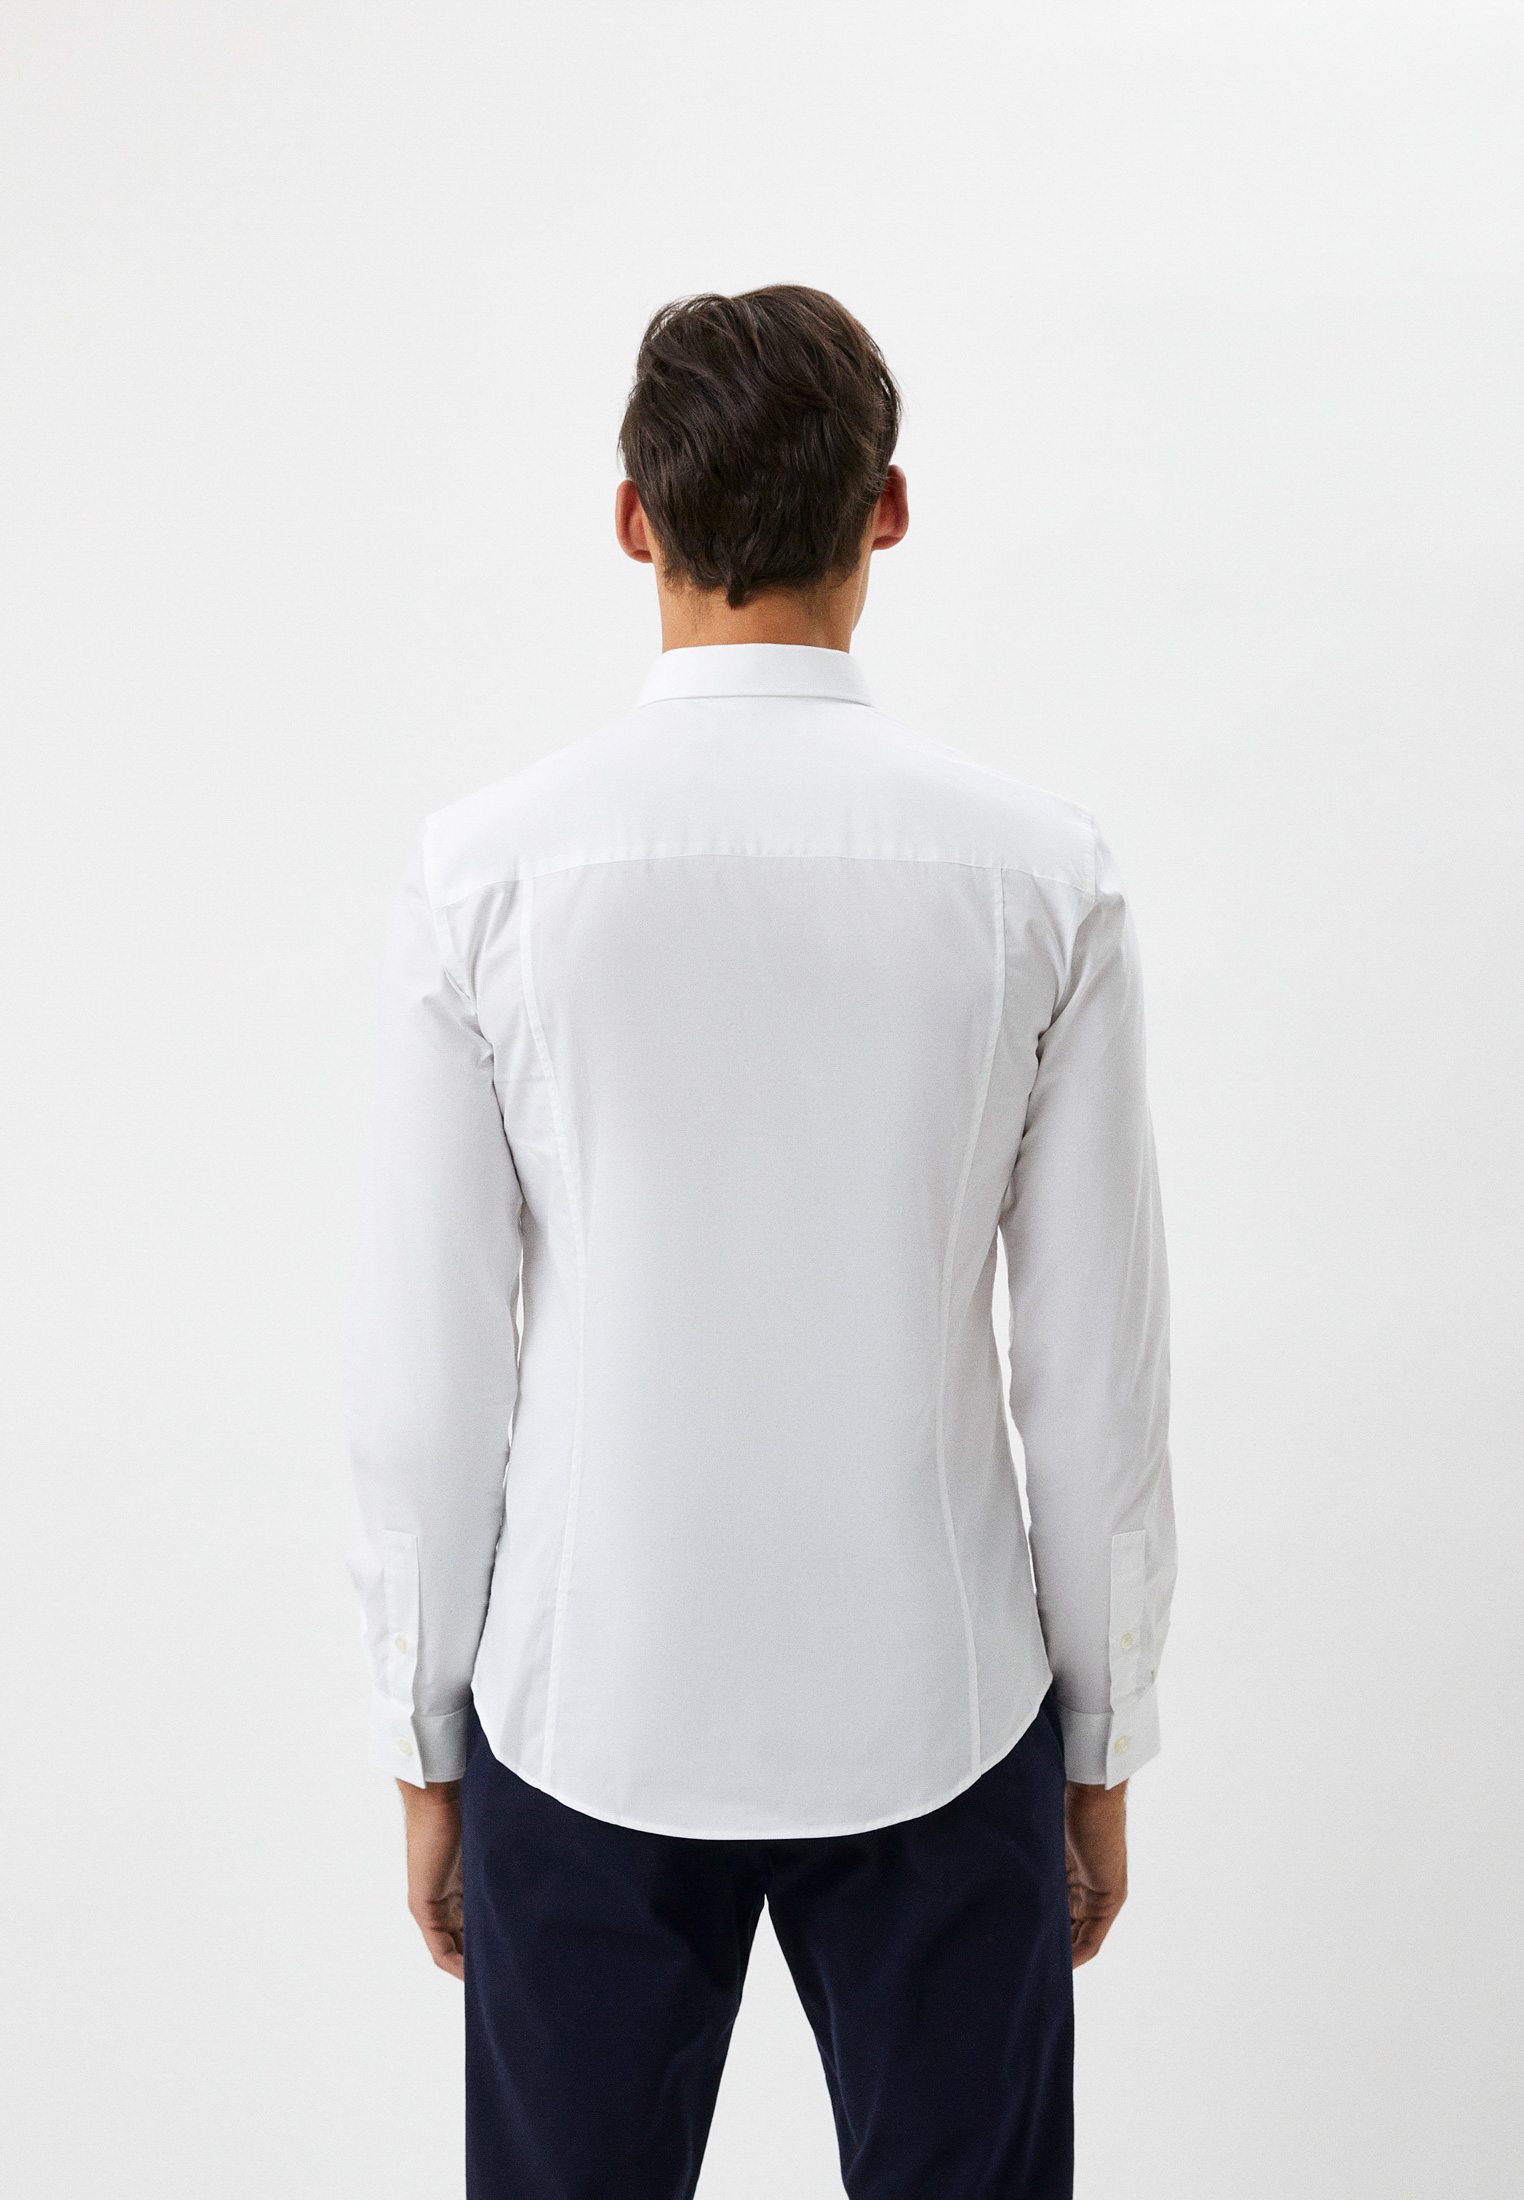 Рубашка с длинным рукавом Bikkembergs (Биккембергс) C C 009 82 S 2931: изображение 6